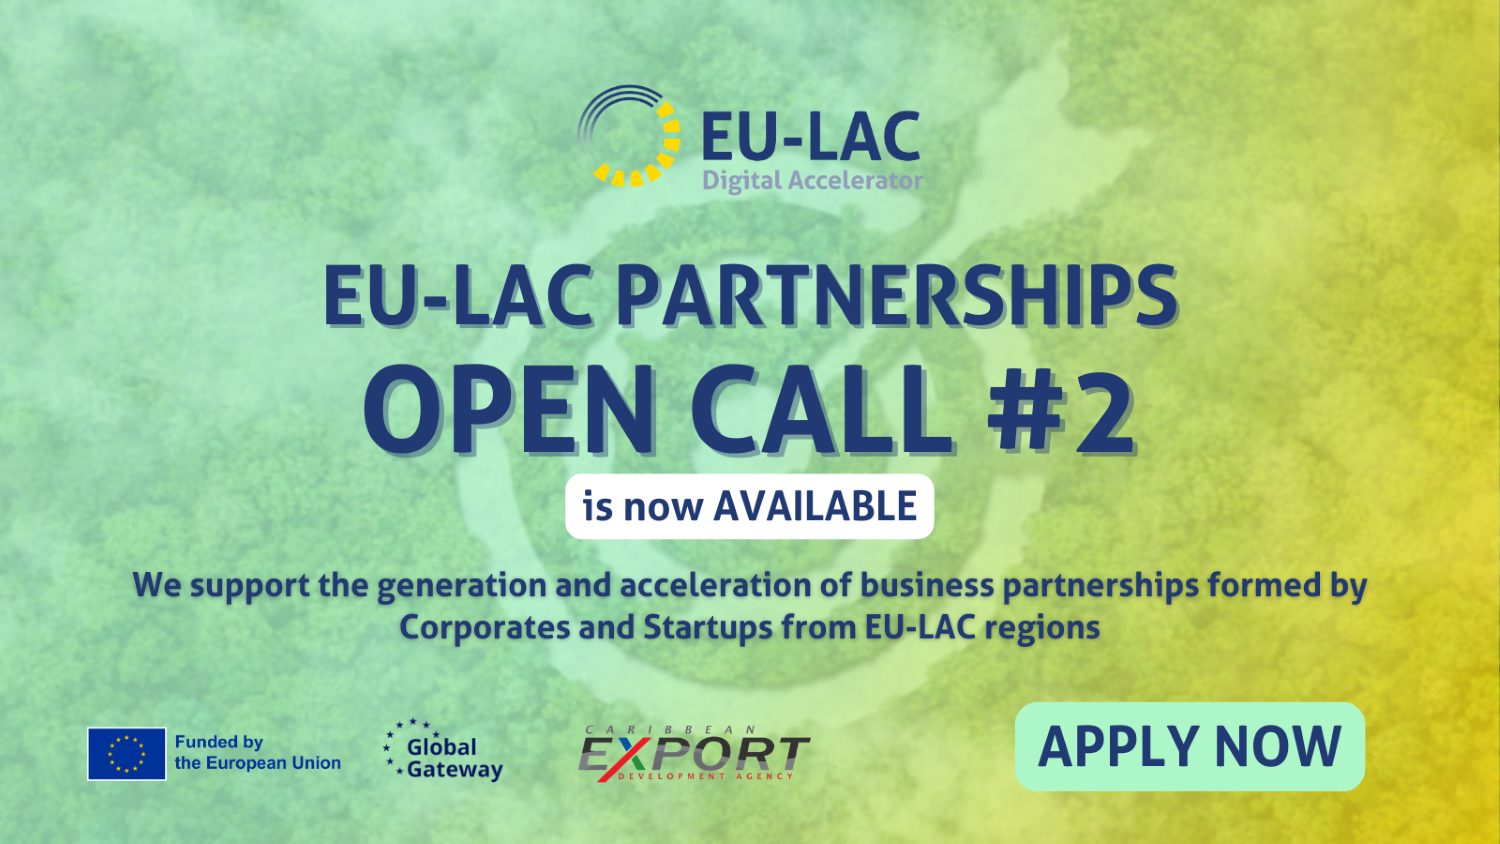 La Aceleradora Digital UE-ALC lanza la segunda Convocatoria Abierta para Asociaciones Empresariales Digitales Europeas, Latinoamericanas y Caribeñas